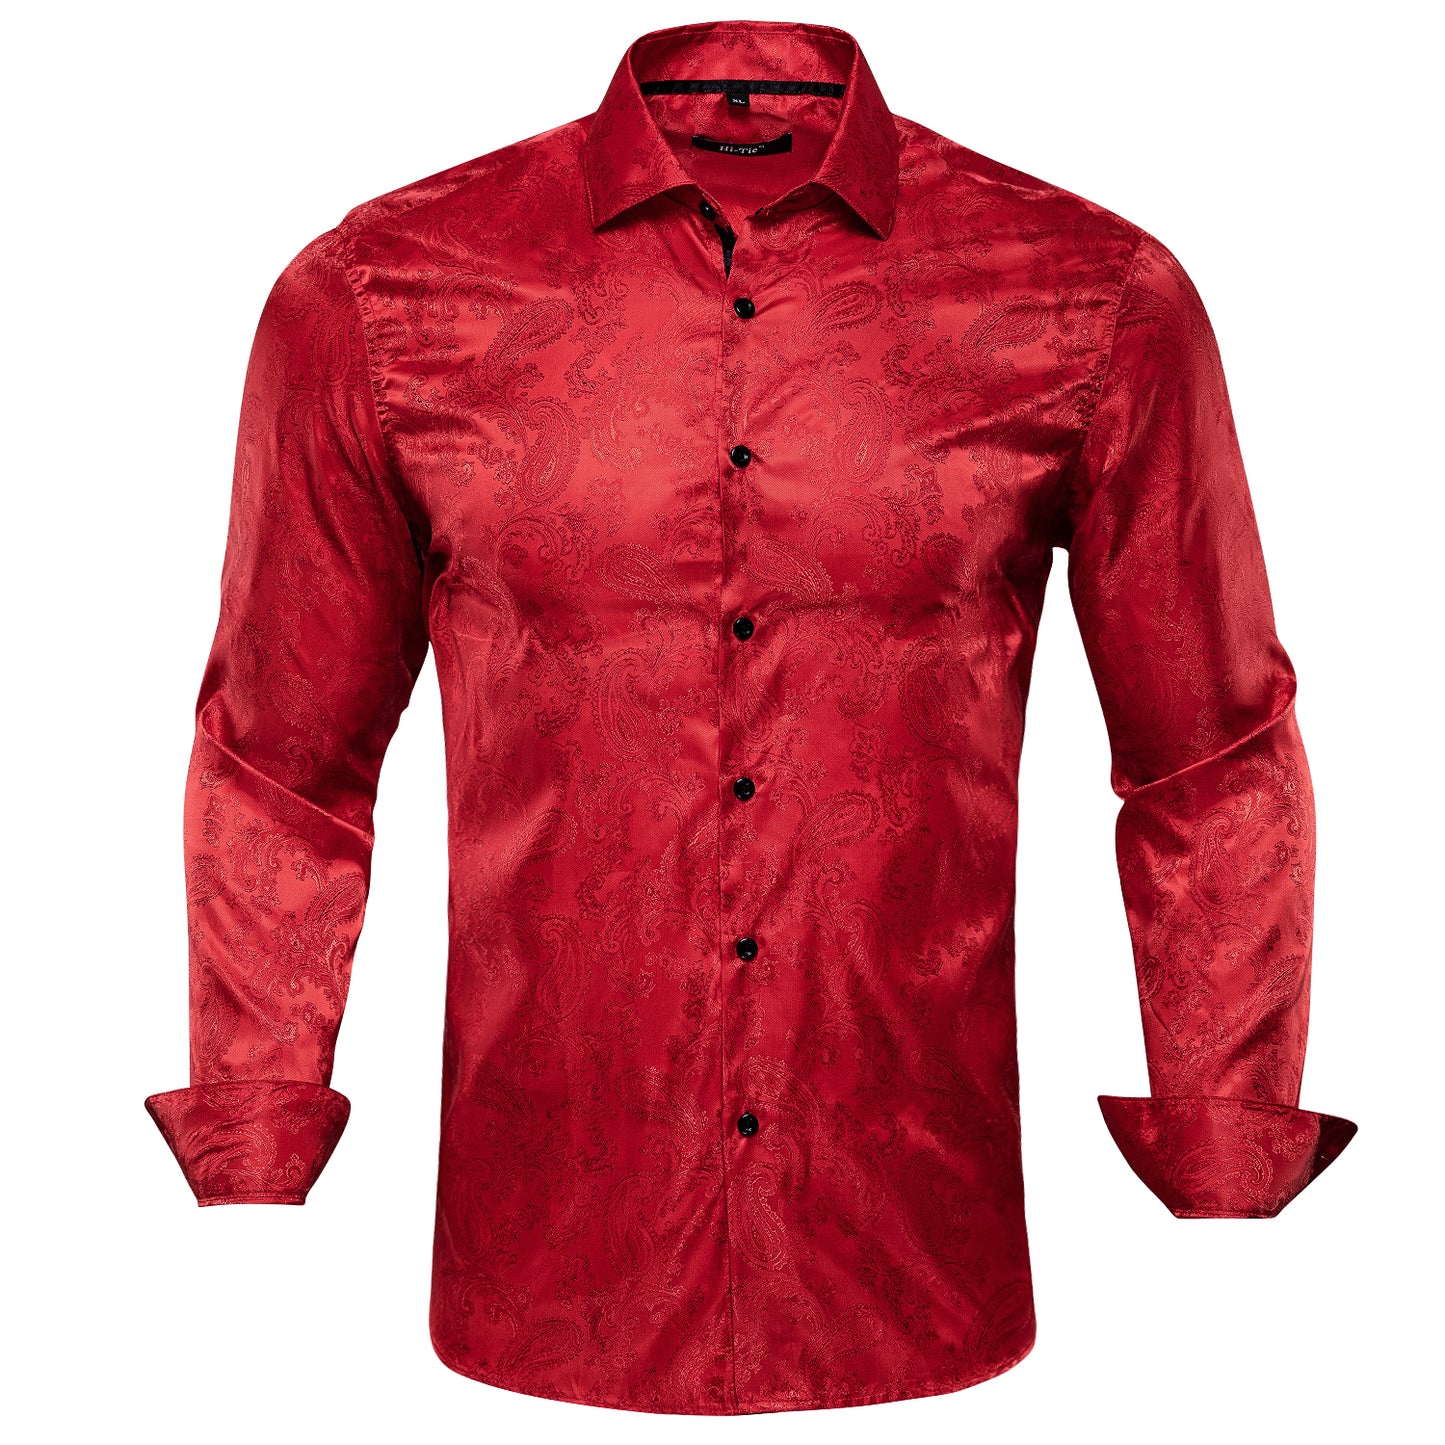 Novelty Silky Shirt - Red Cashews